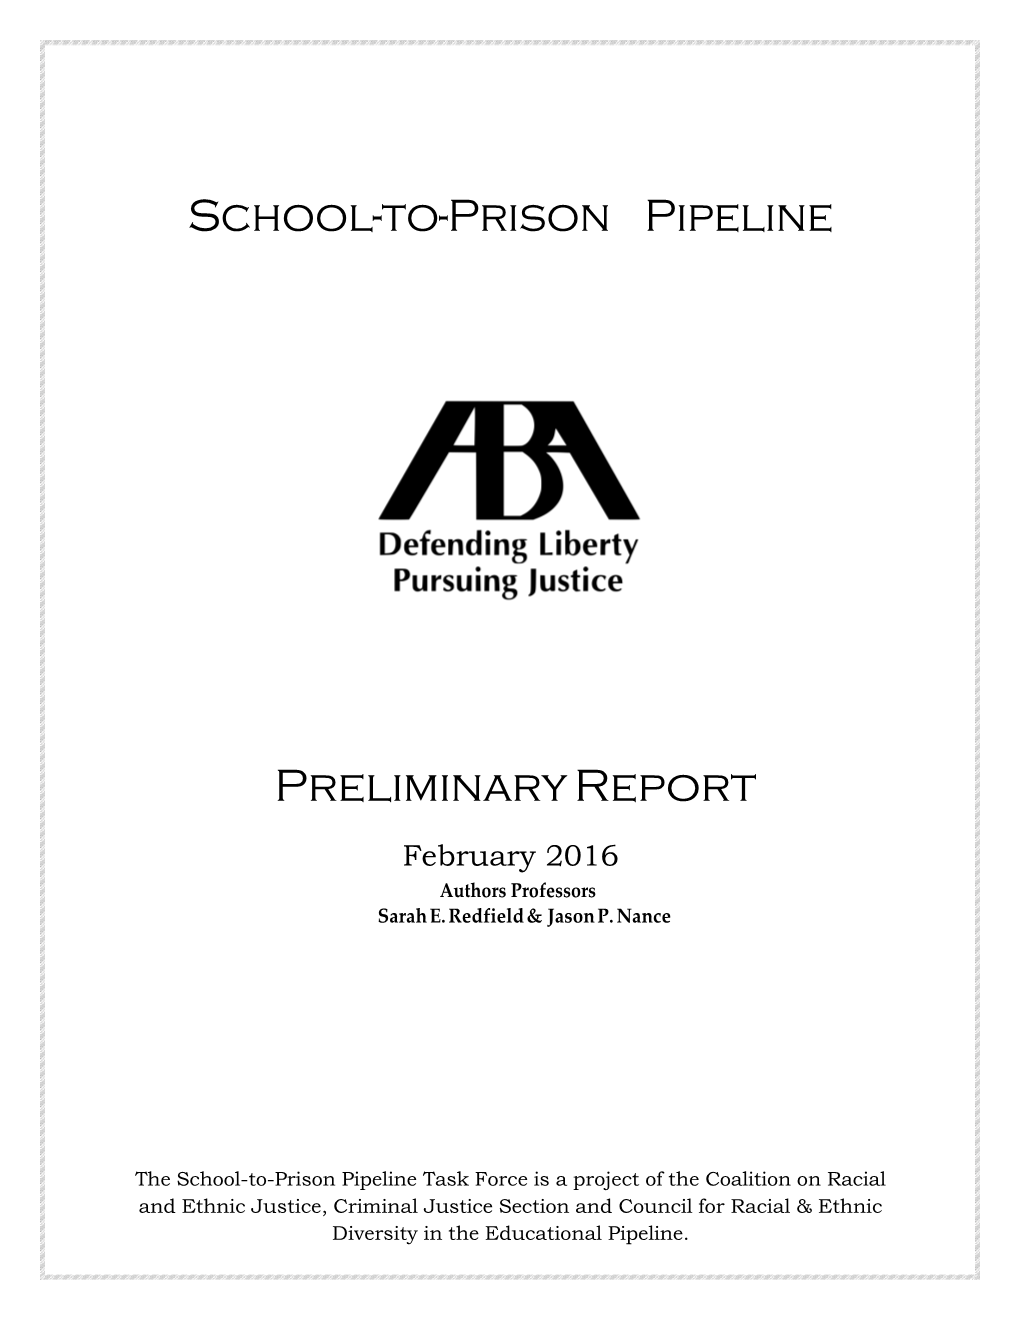 School-To-Prison Pipeline Preliminary Report